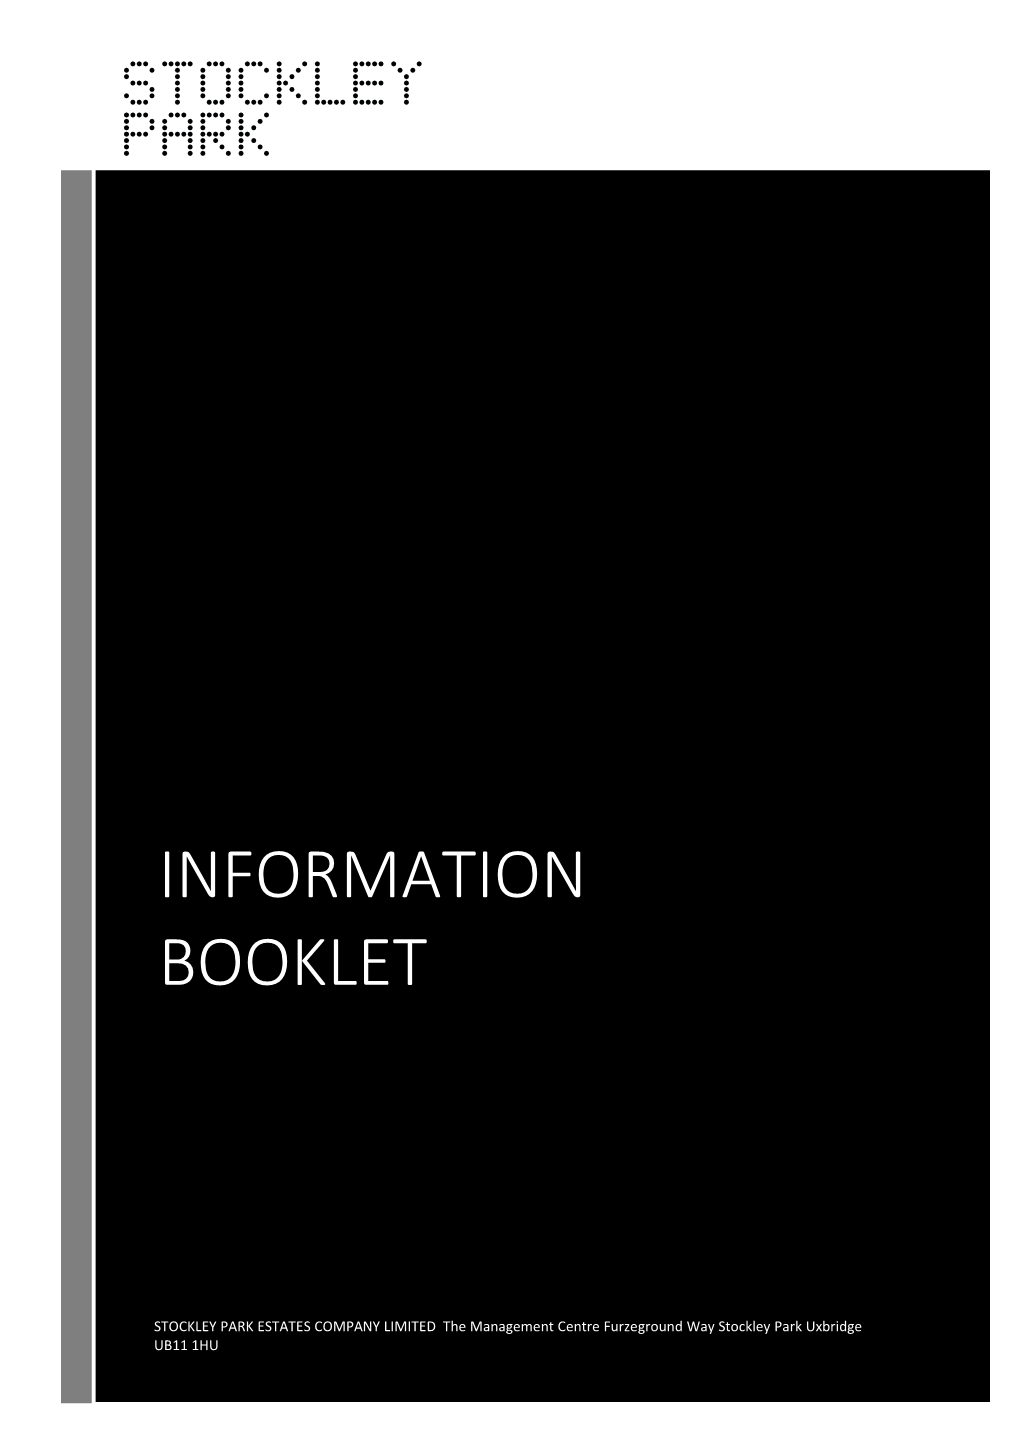 Information Booklet